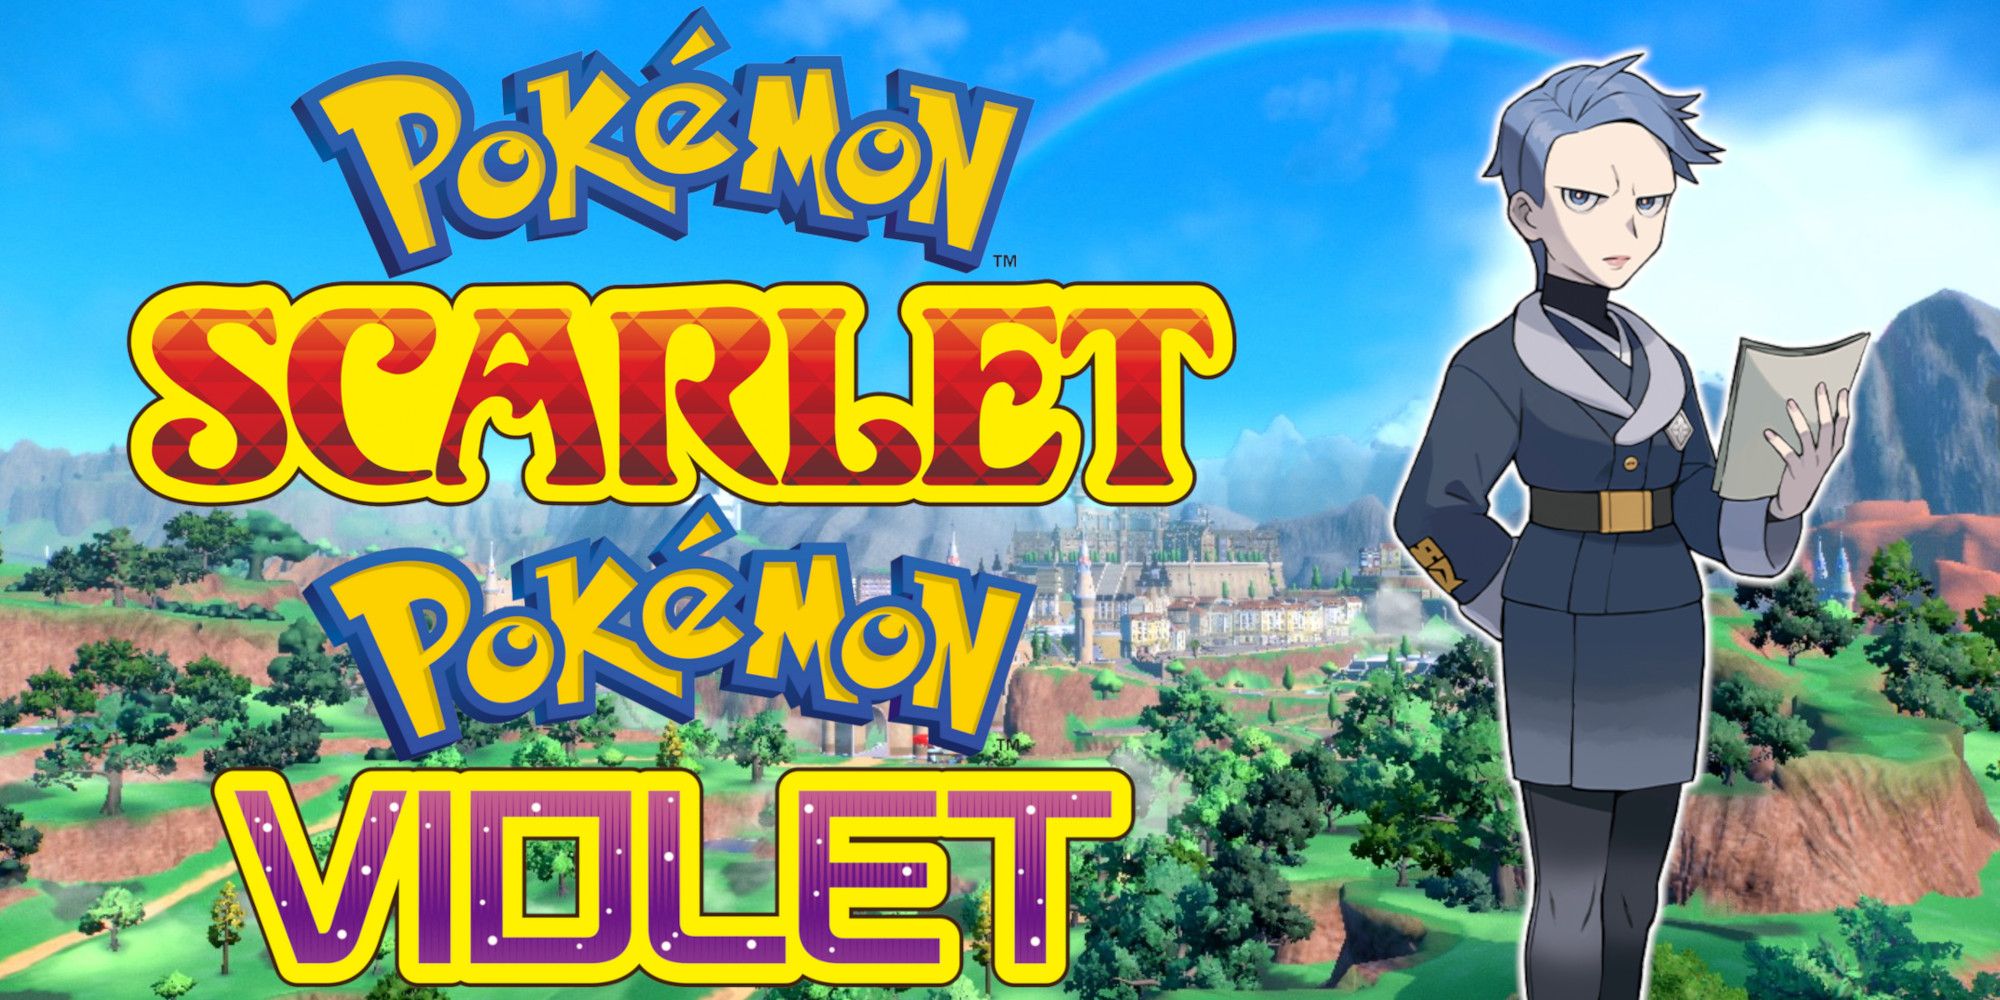 How Pokémon Scarlet & Violet Can Link To Legends Arceus